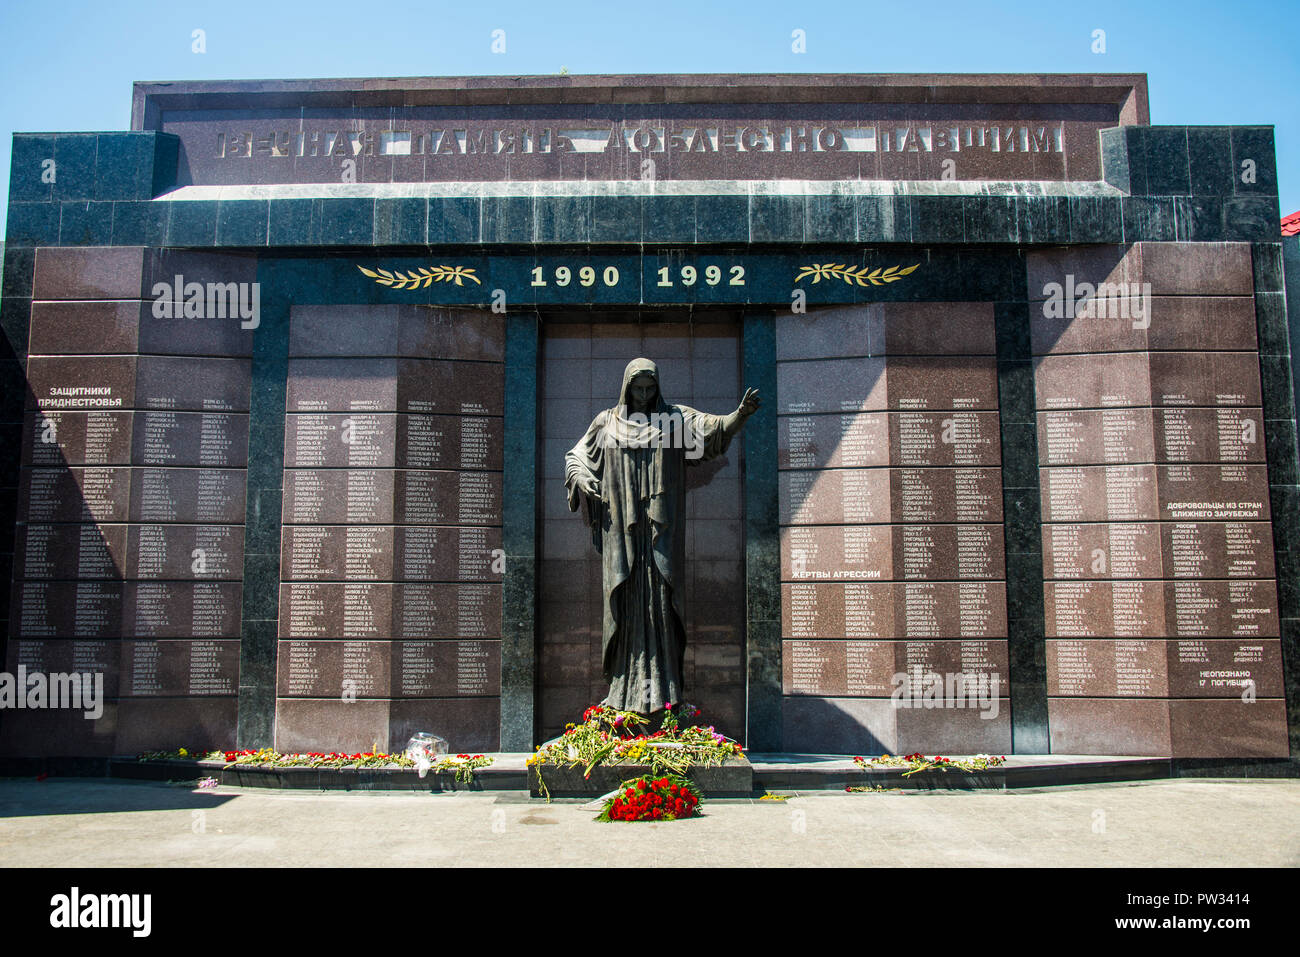 Monumento de guerra, Tiraspol, capital de la República de Transnistria, Moldavia Foto de stock